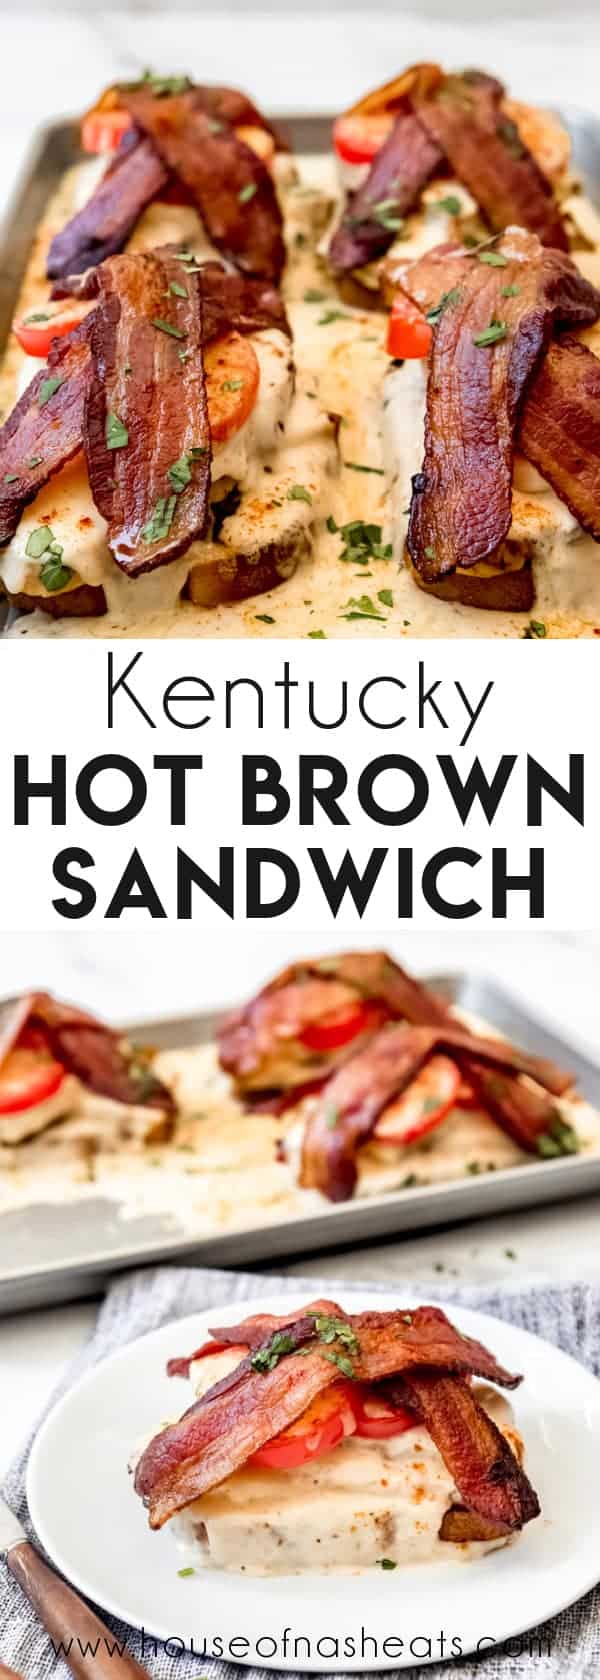 Kentucky hot brown sandwich